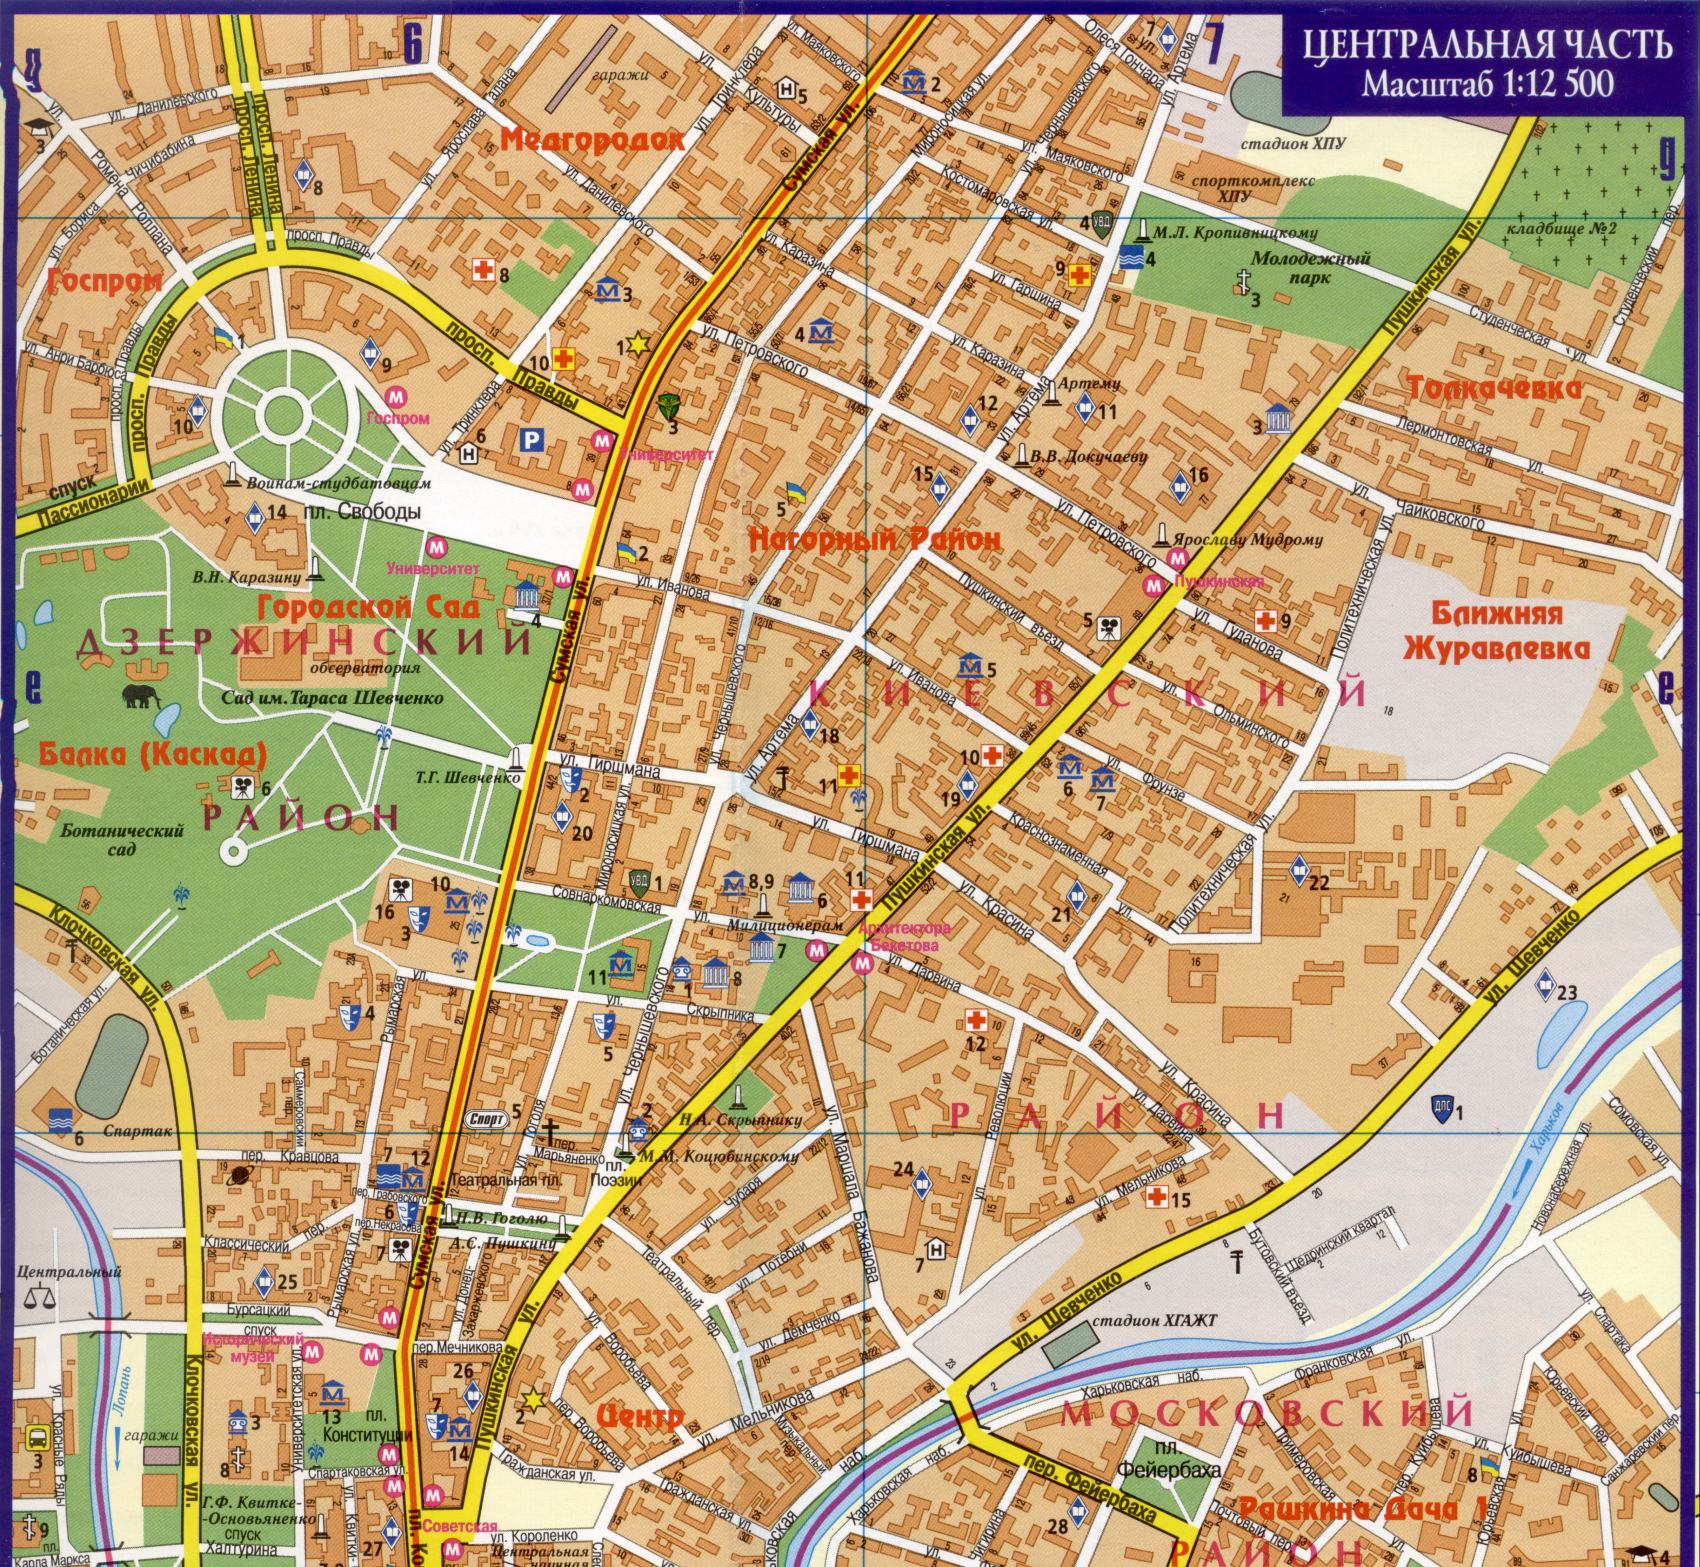 Kharkov Karte - detaillierte Karte von Kharkov Stadtzentrum